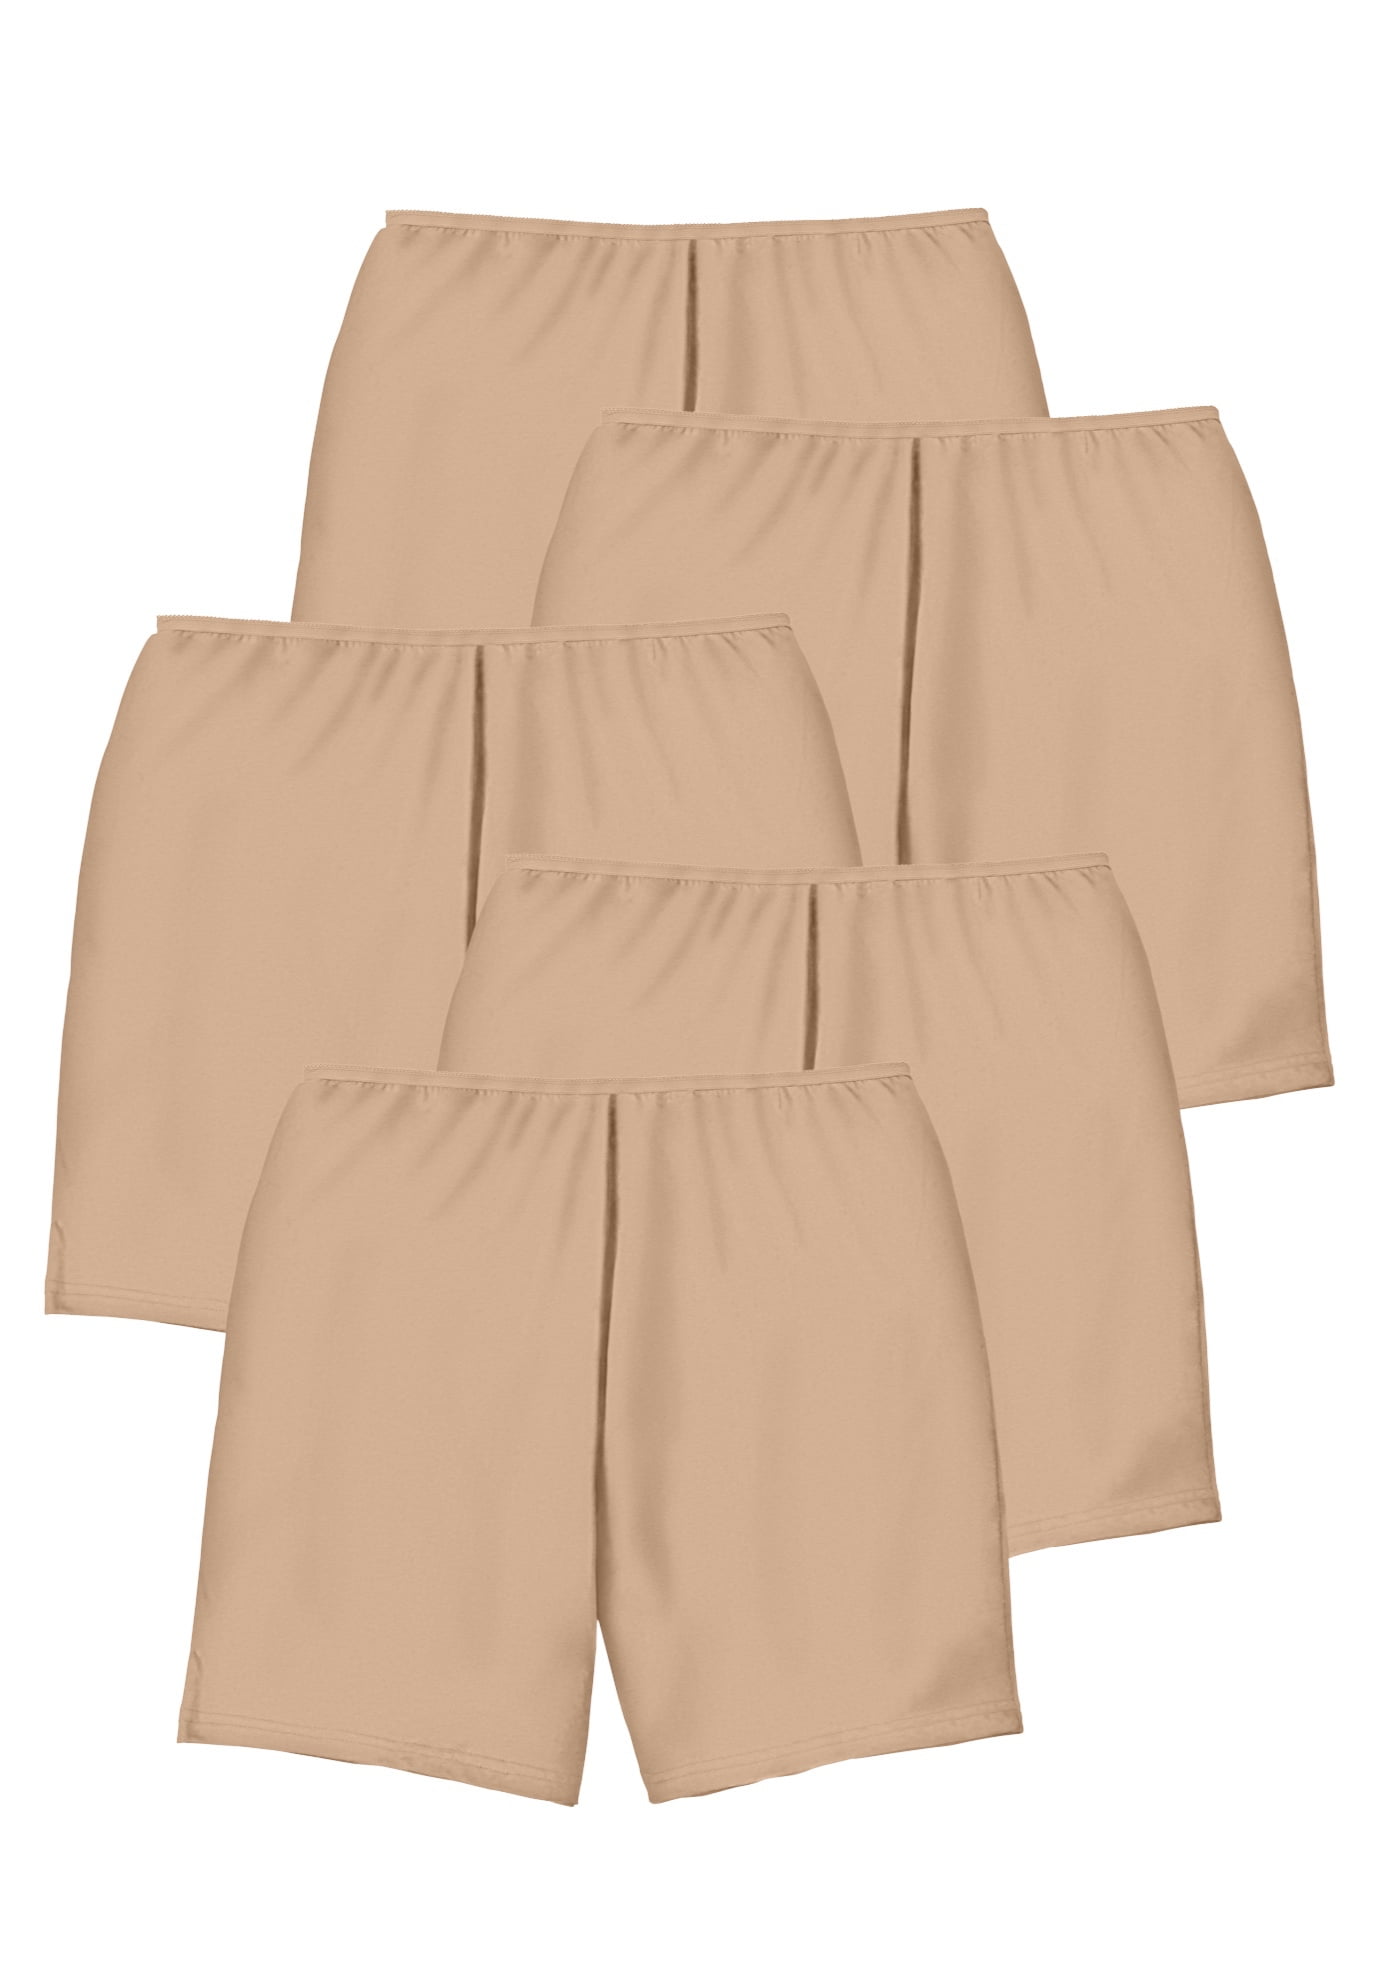 Comfort Choice Women's Plus Size Women's Cotton Boxer 5-Pack Panties -  Walmart.com